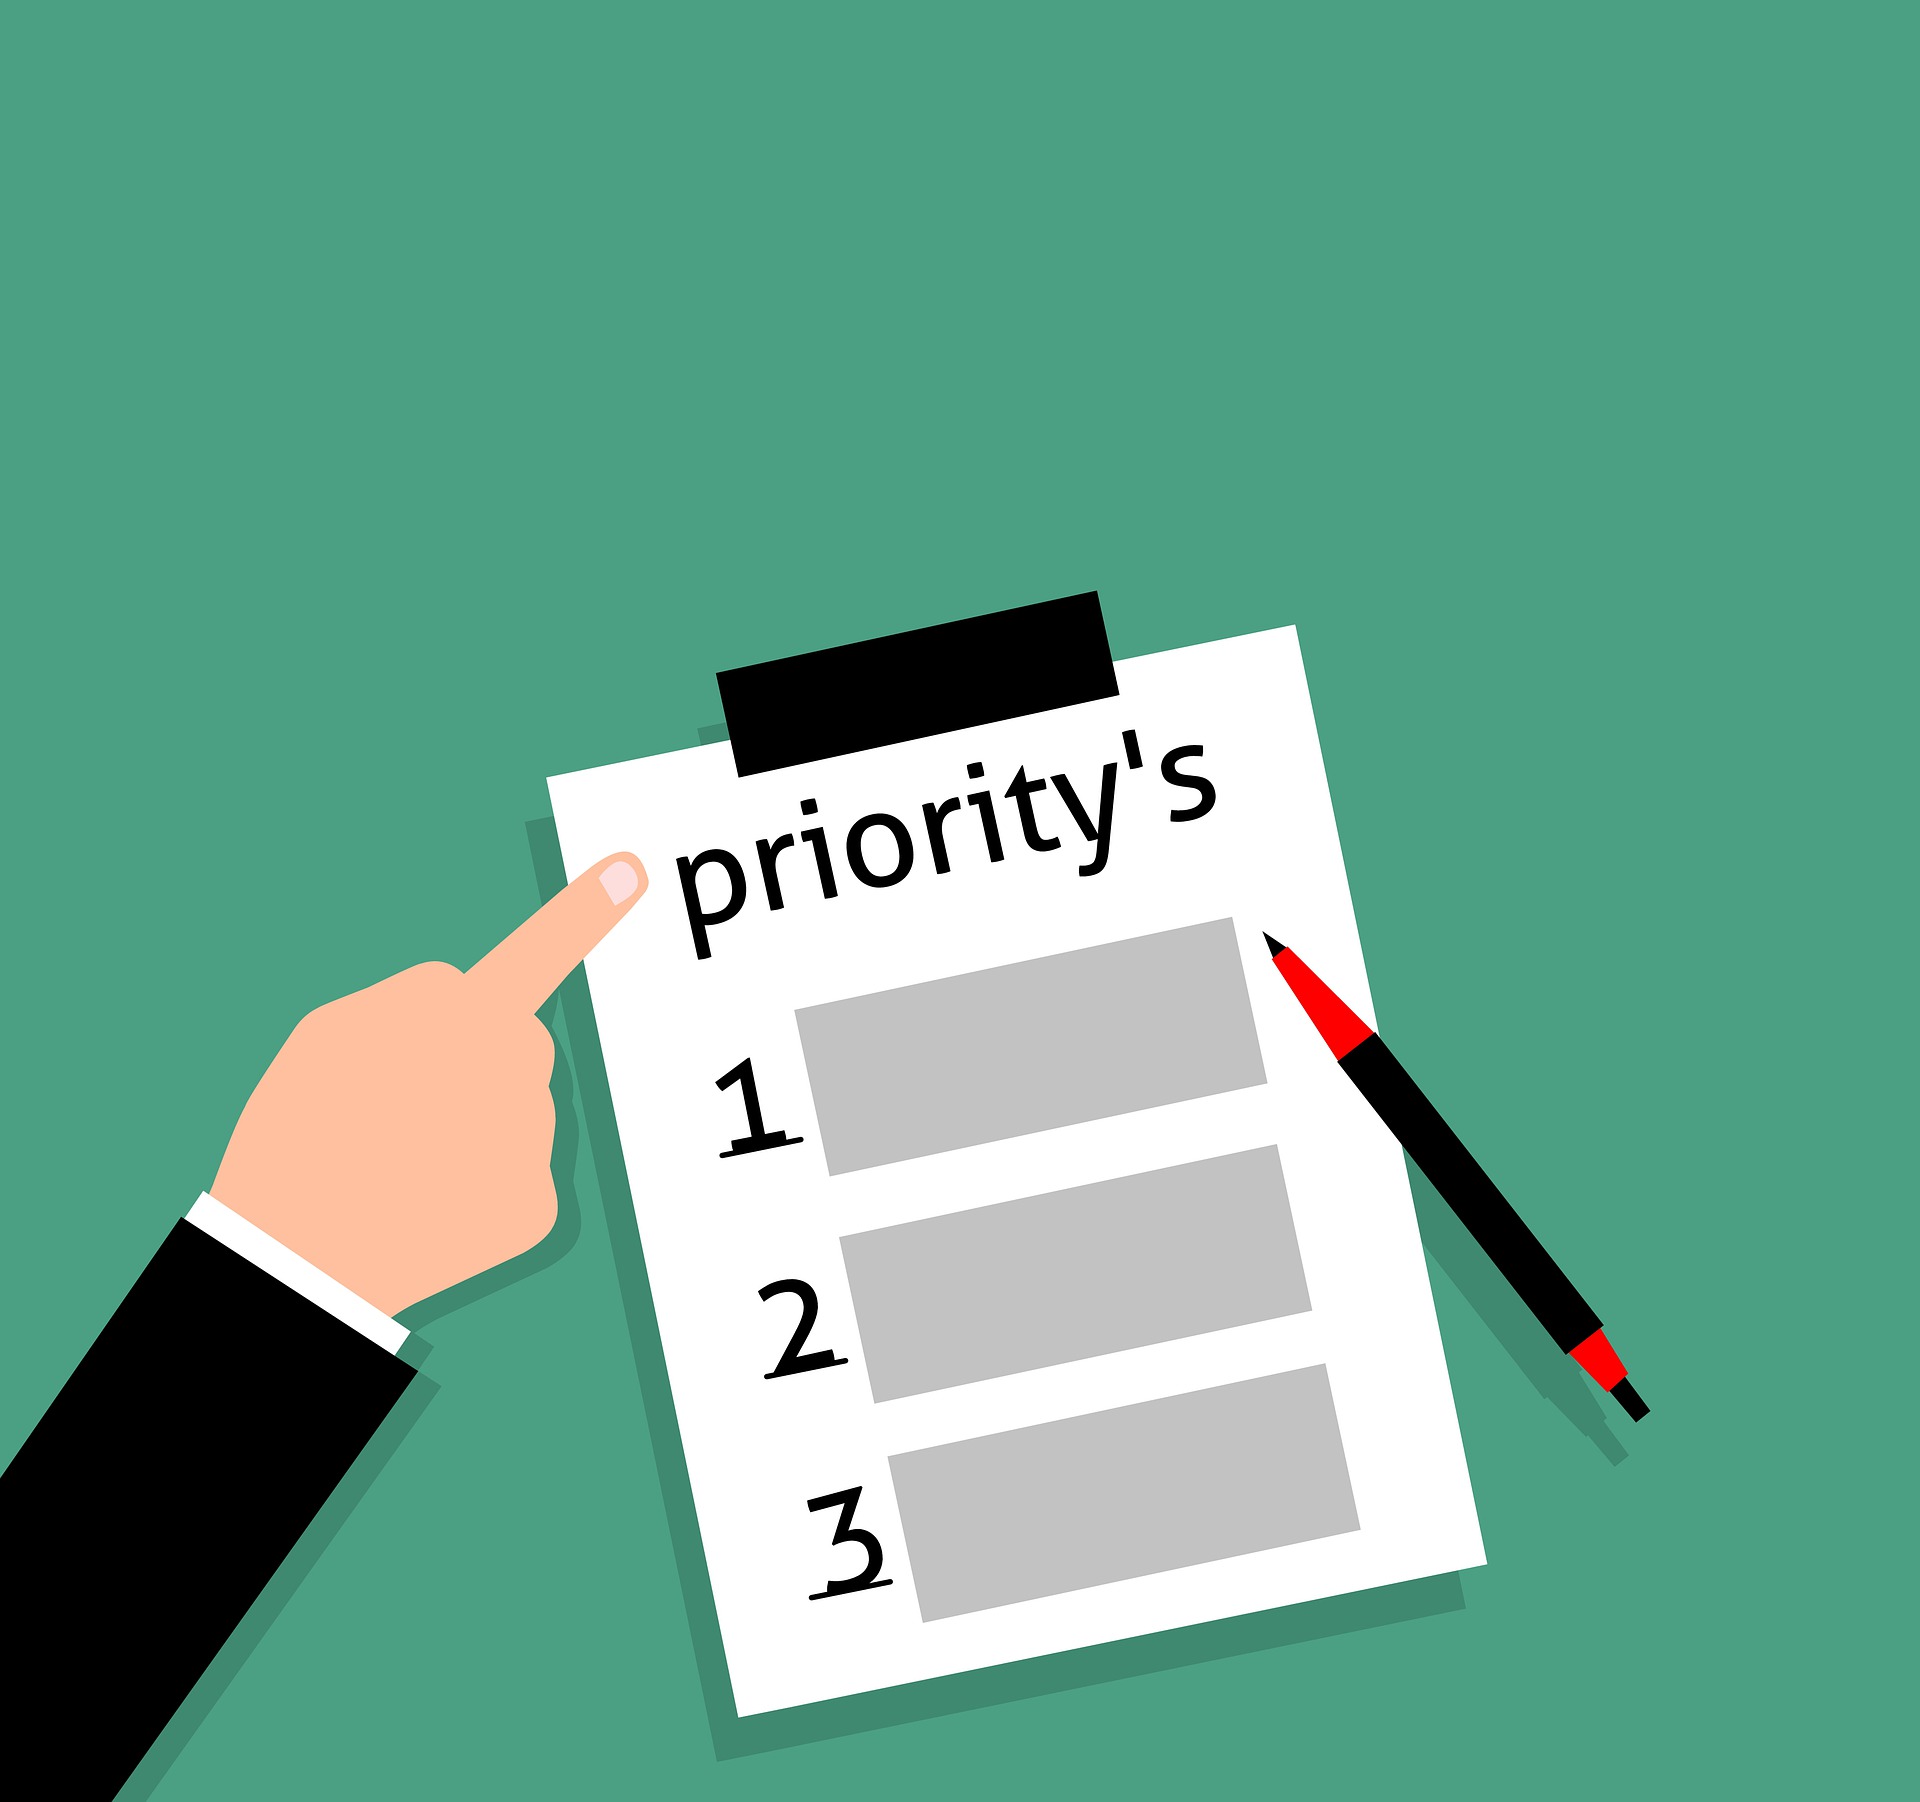 List of priorities